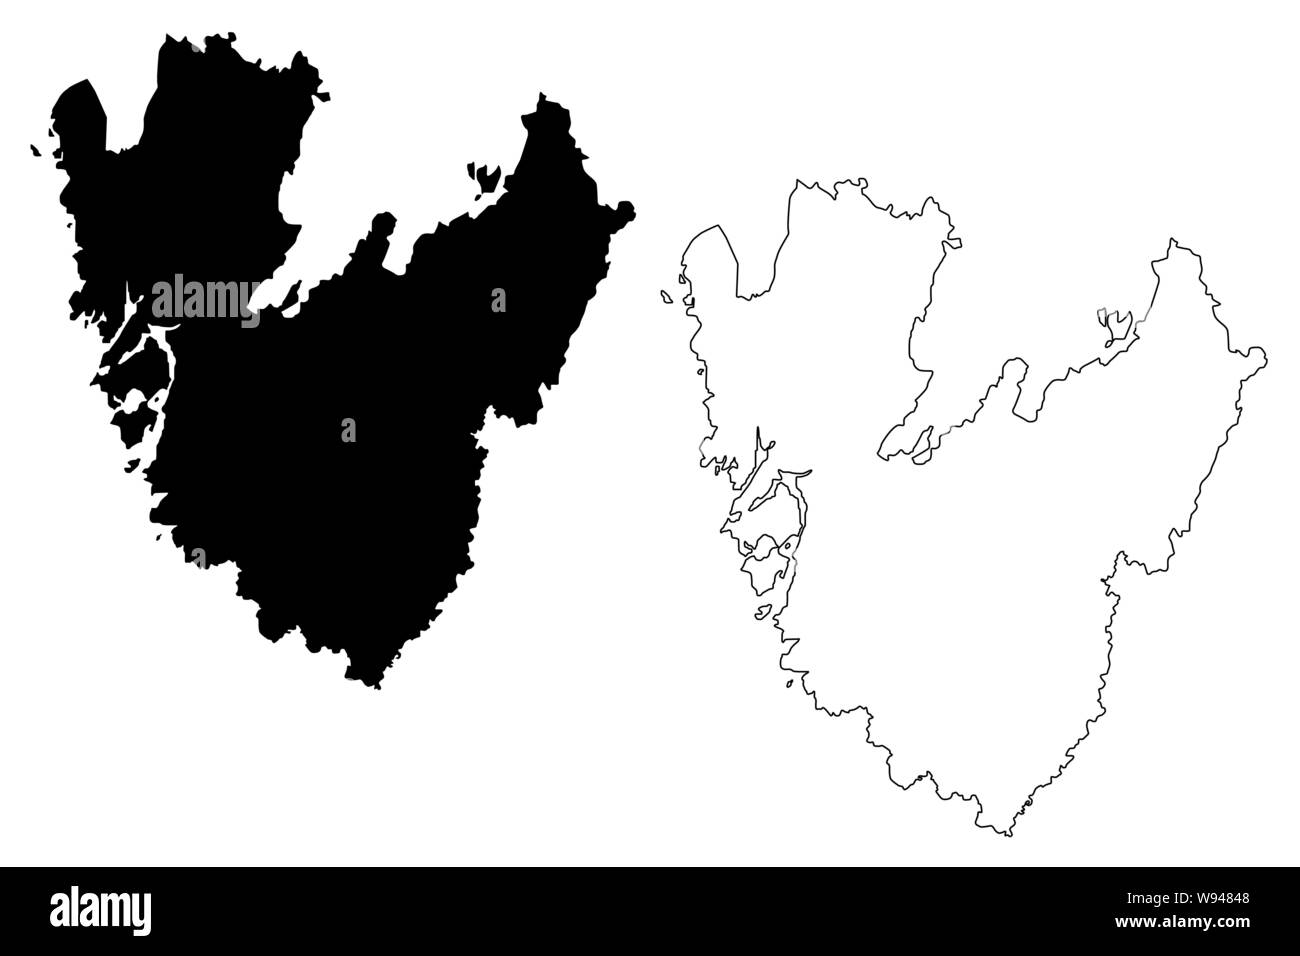 Vastra Gotaland County (contee della Svezia e Regno di Svezia) mappa illustrazione vettoriale, scribble schizzo Västra Götaland mappa Illustrazione Vettoriale